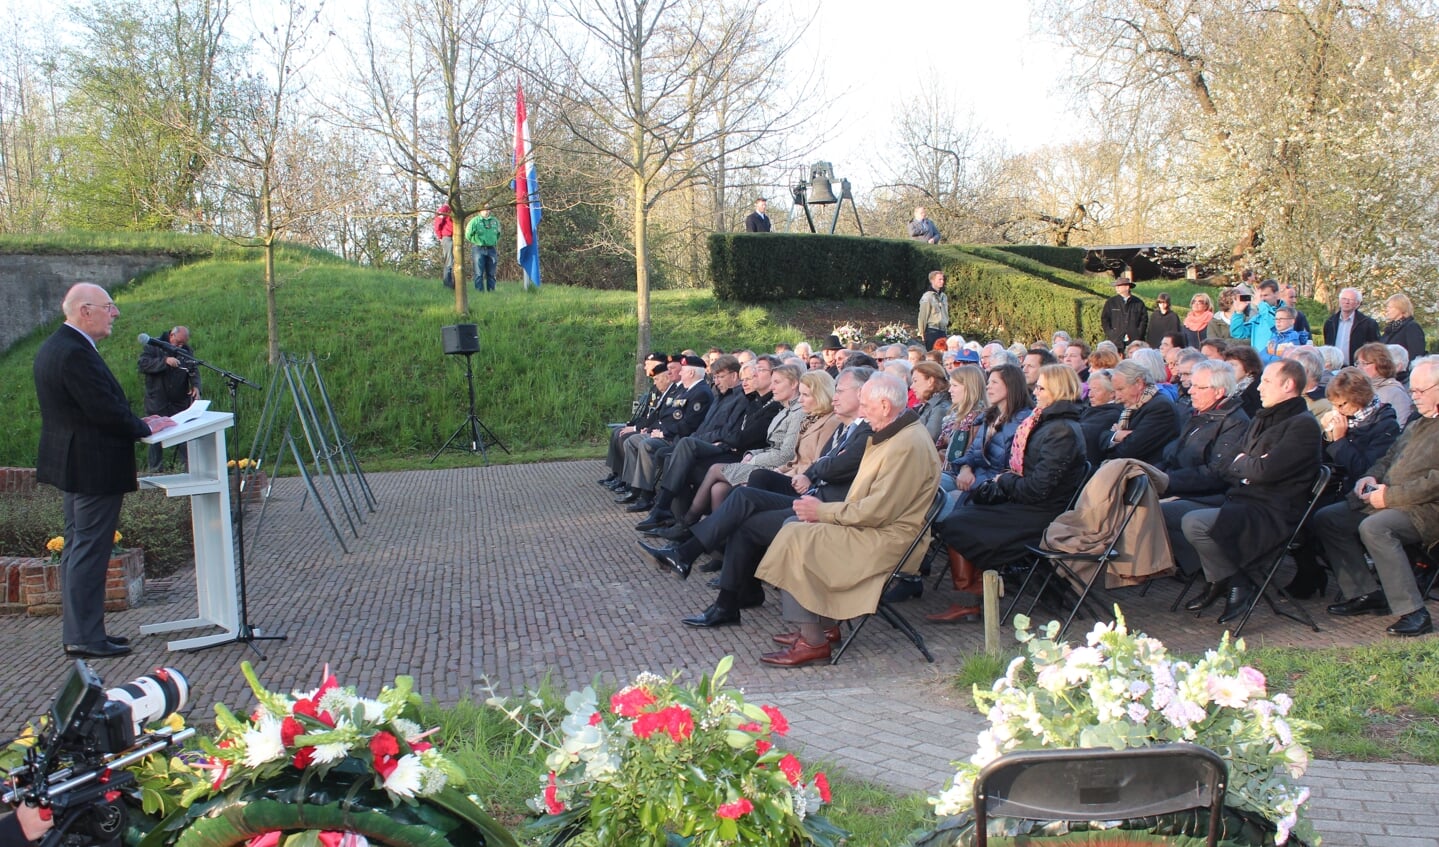 In 2013 was Mobach zelf spreker bij de herdenkingsbijeenkomst bij Fort De Bilt: ‘Herdenken is een moment van bezinning‘.In 2013 was Mobach zelf spreker bij de herdenkingsbijeenkomst bij Fort De Bilt: ‘Herdenken is een moment van bezinning‘.